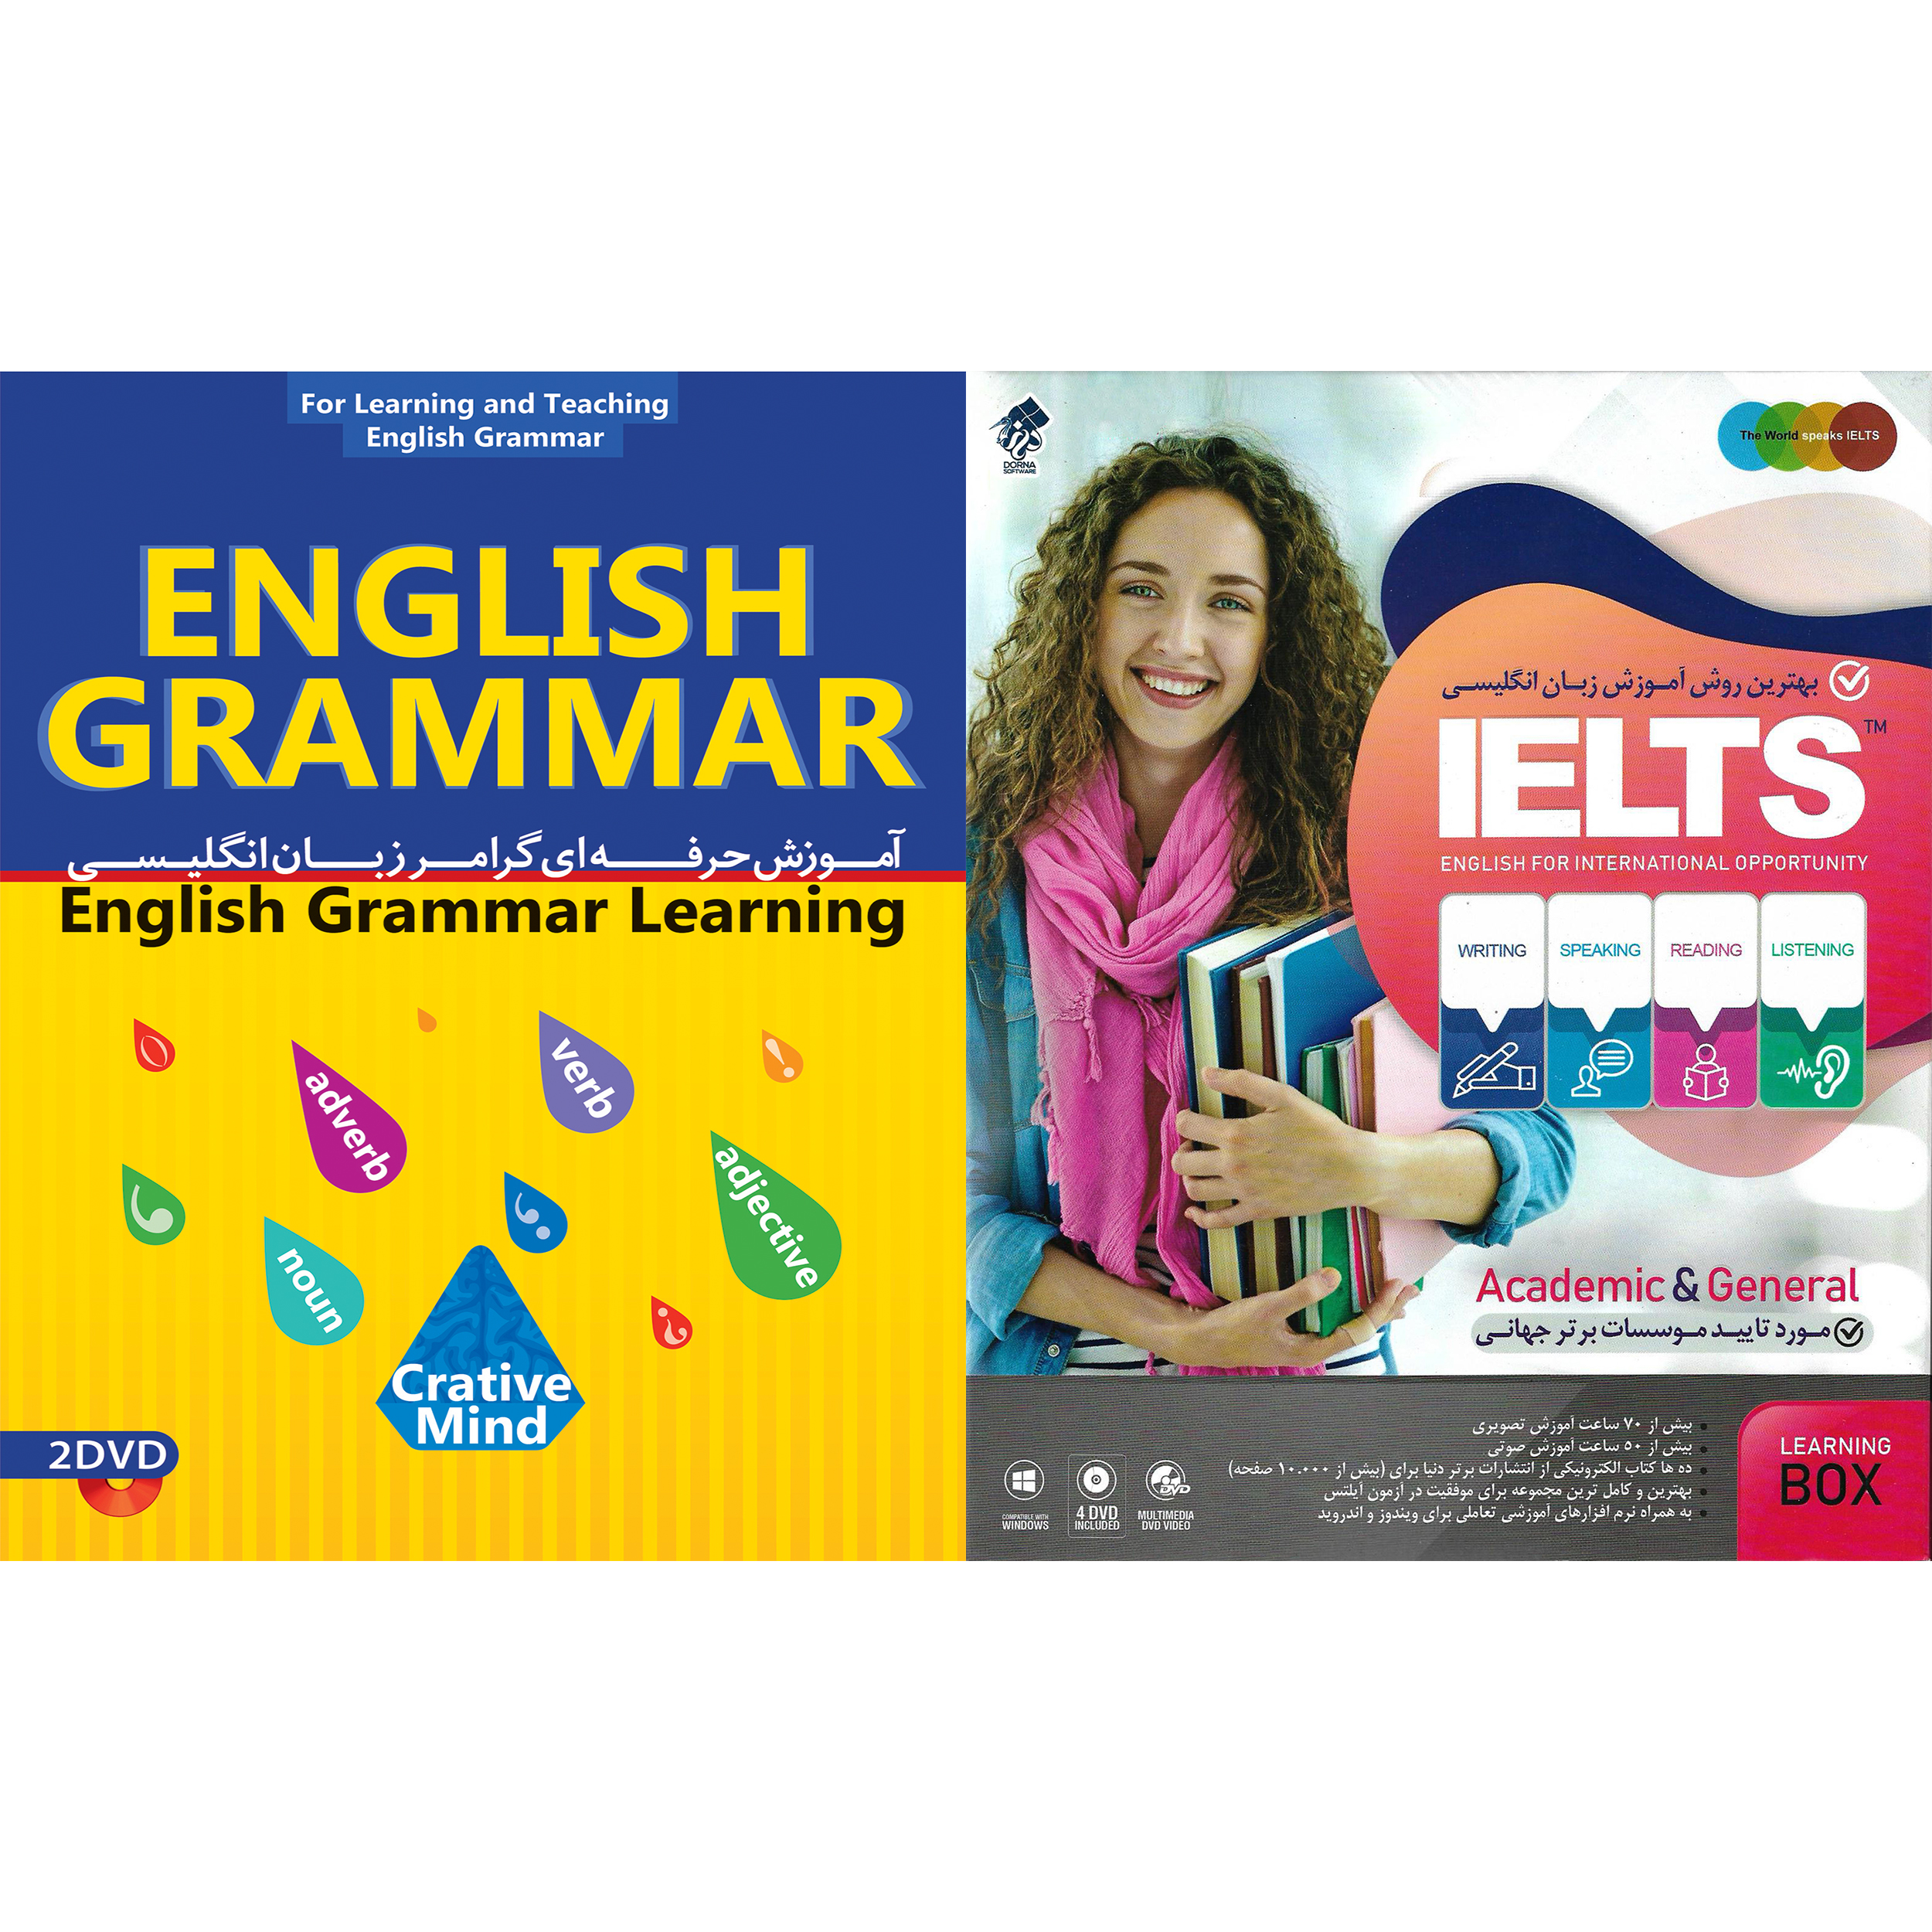 نرم افزار آموزش زبان انگلیسی IELTS نشر درنا به همراه نرم افزار آموزش حرفه ای گرامر زبان انگلیسی نشر پدیده